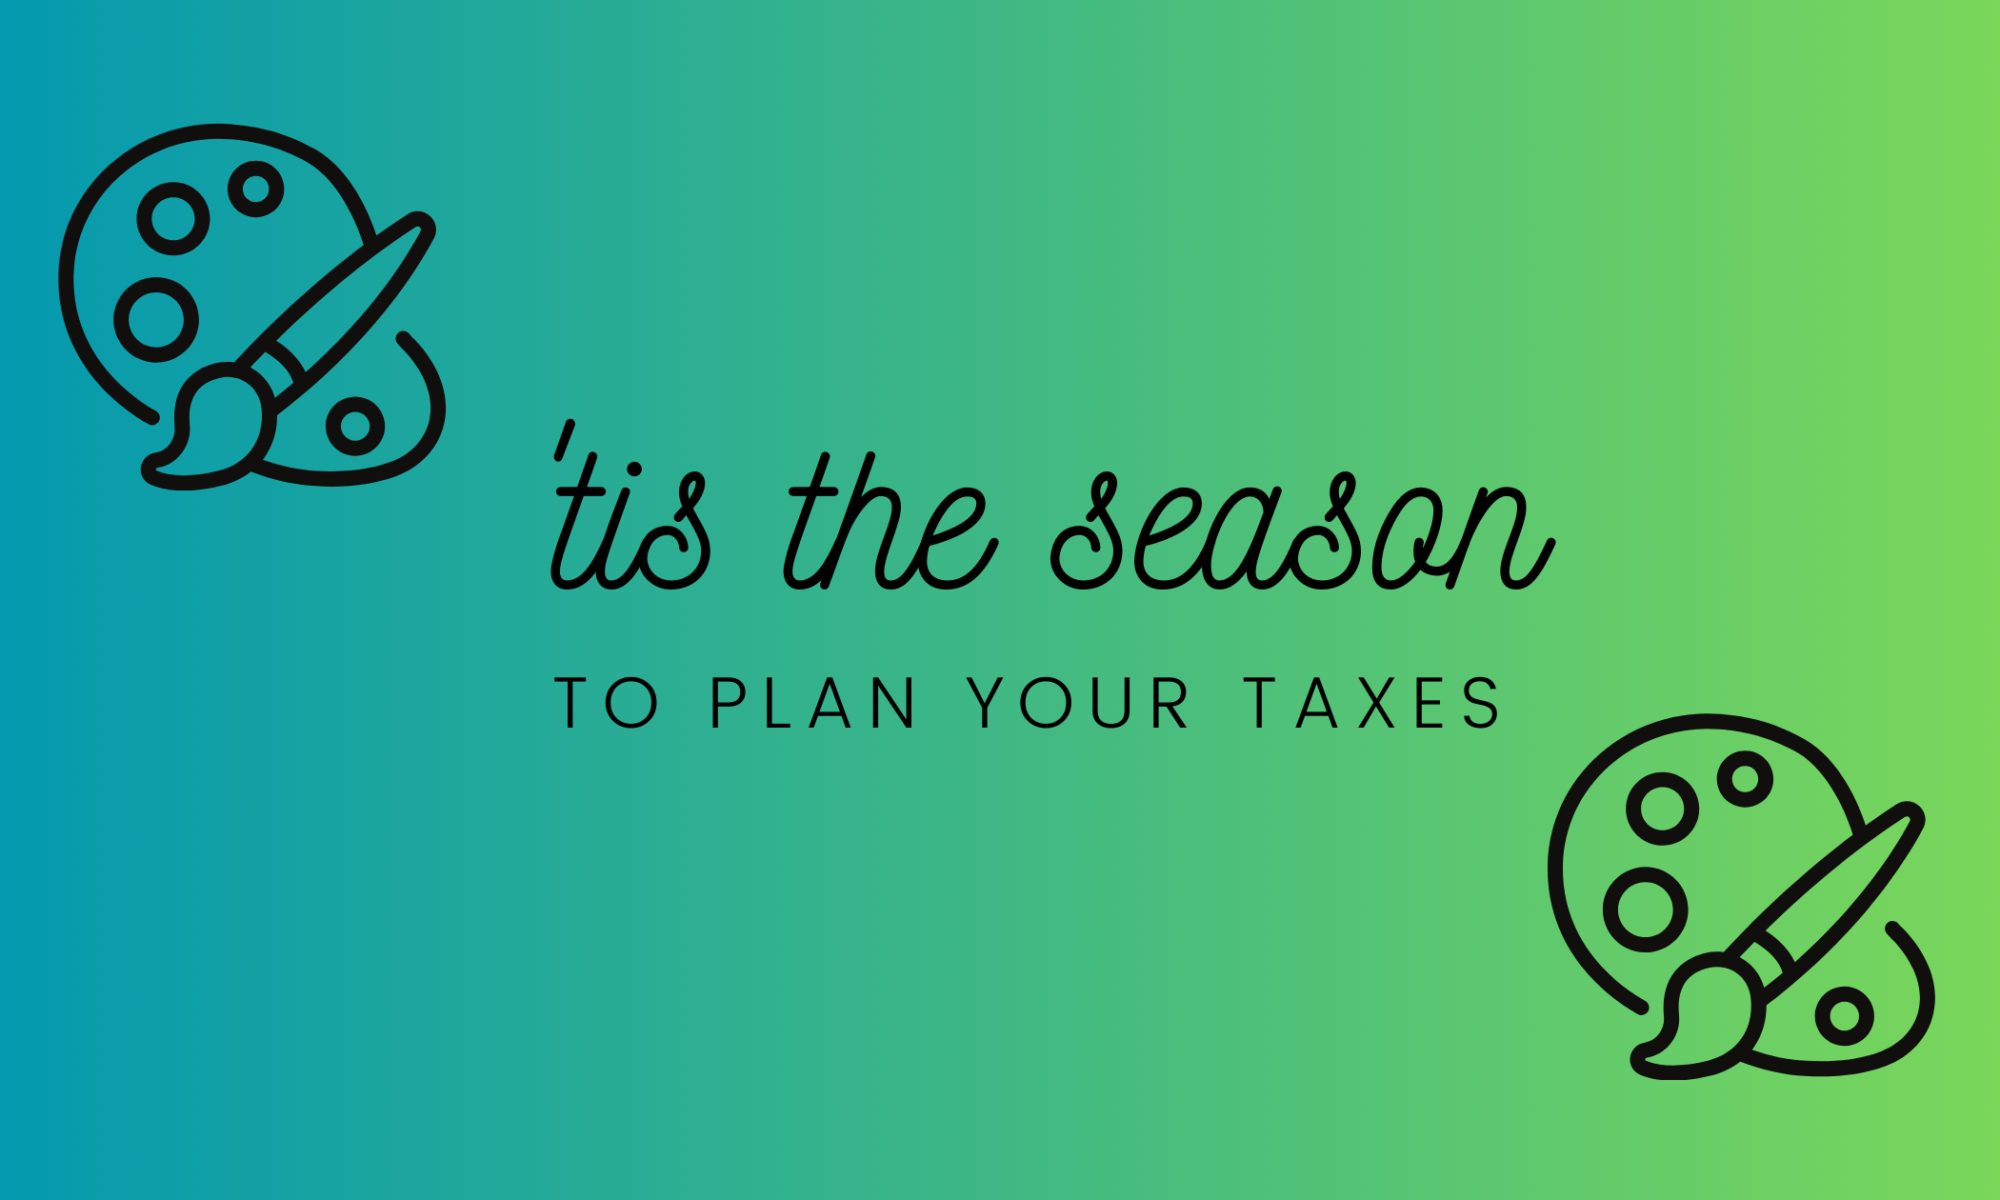 Tis the season - to plan your taxes